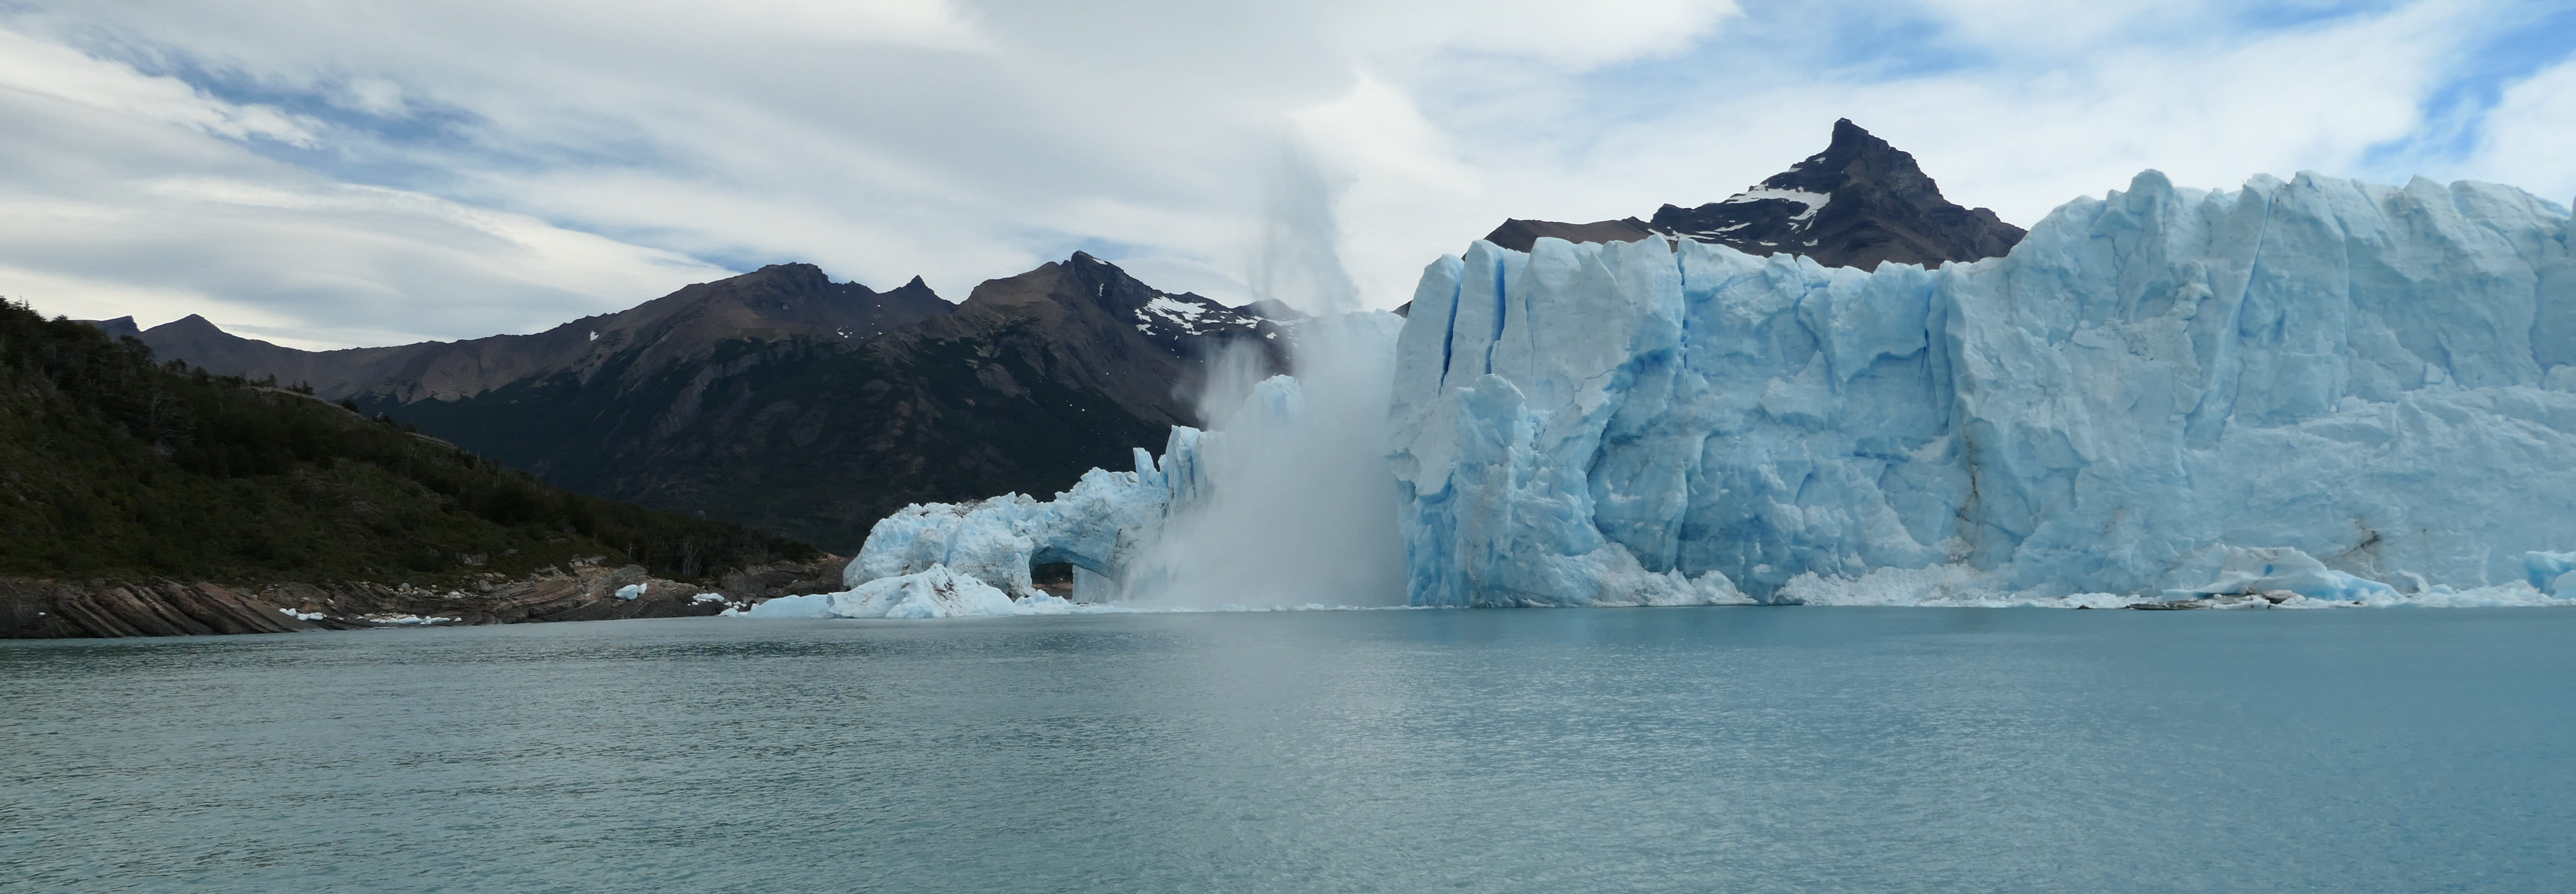 Glaciar Perito Moreno en el Parque Nacional de los Glaciares (Patagonia, Argentina)(Javier de Pedraza Gilsanz)